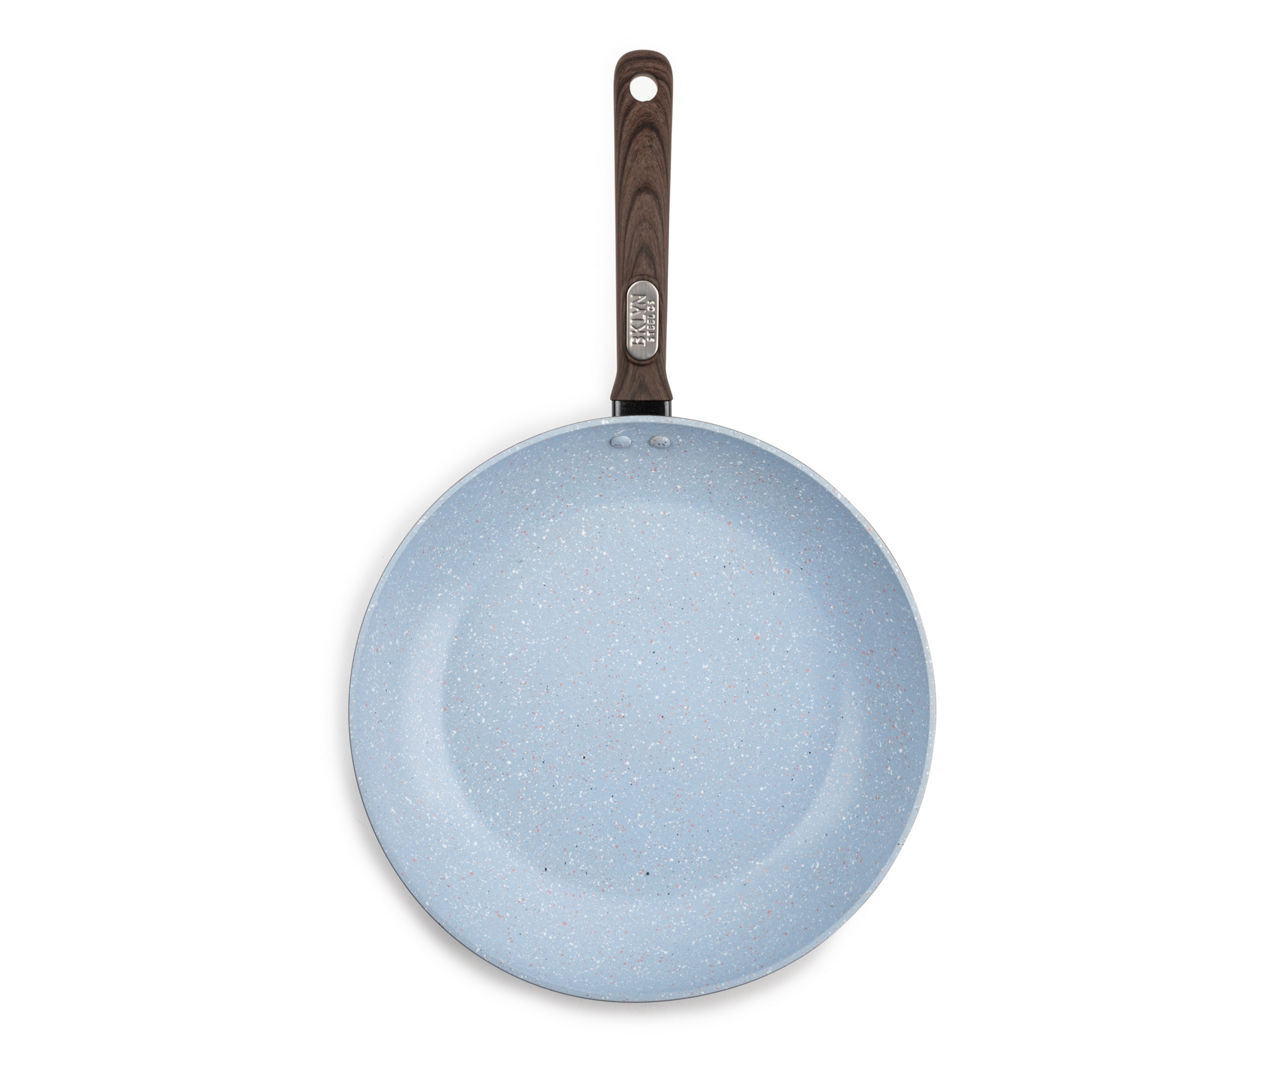 Granitestone Blue Stainless Steel 12'' Fry Pan